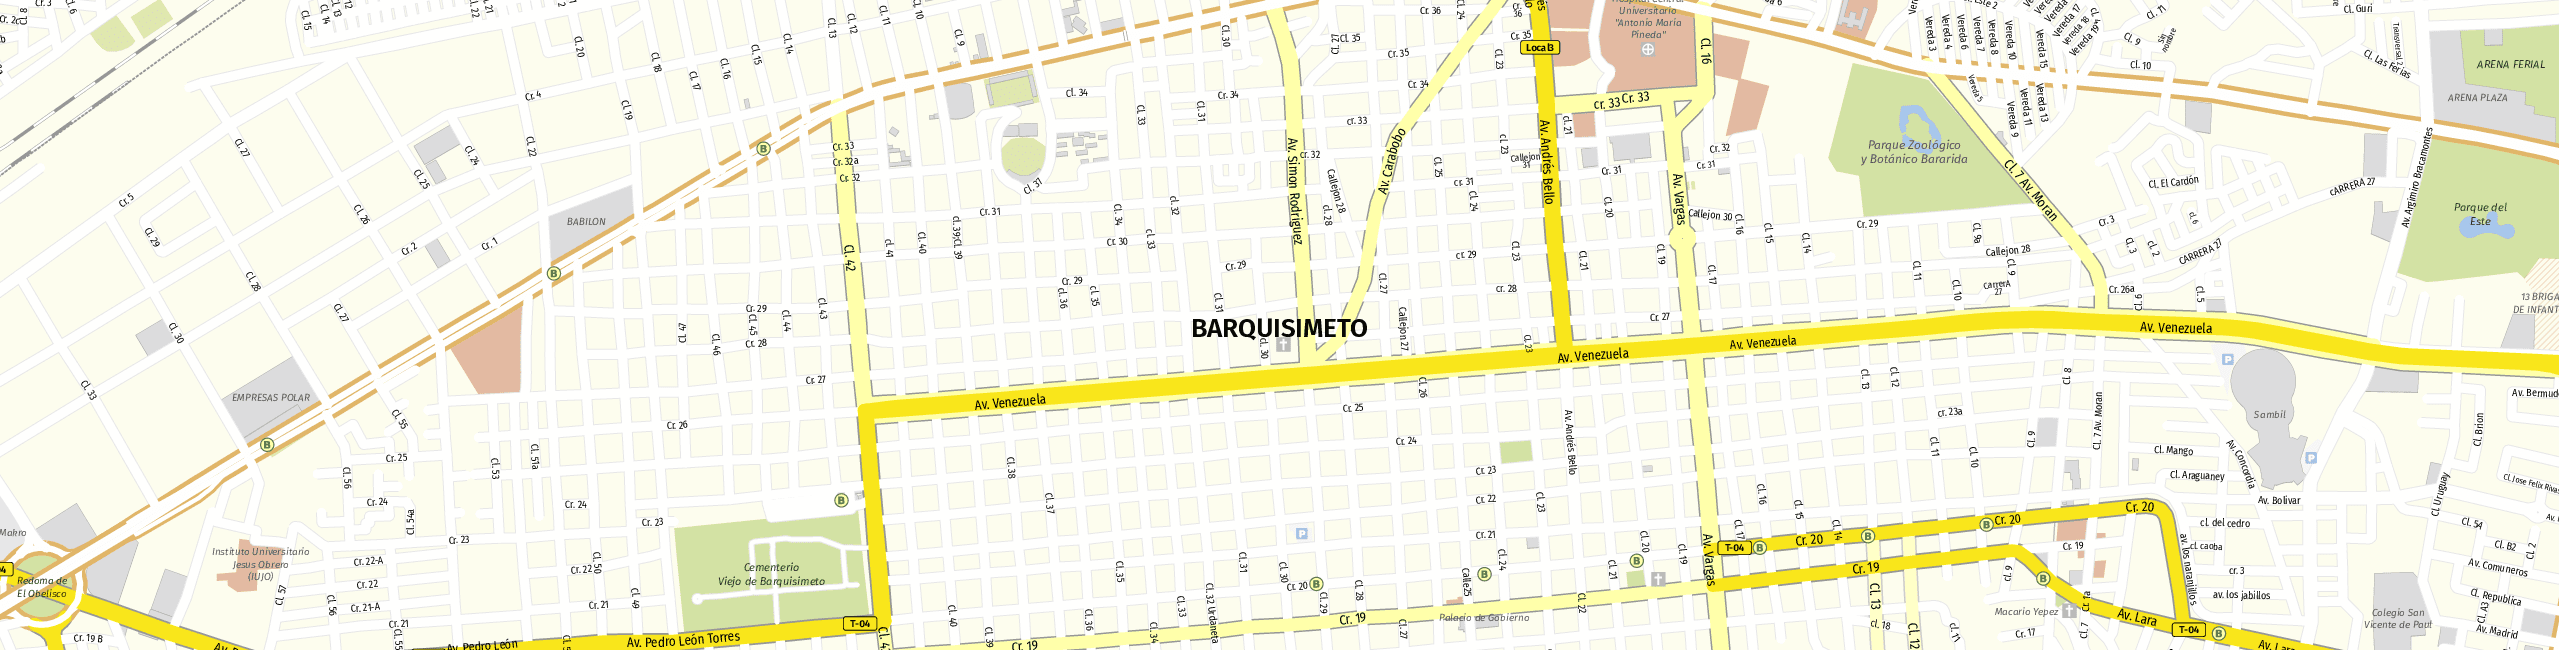 Stadtplan Barquisimeto zum Downloaden.